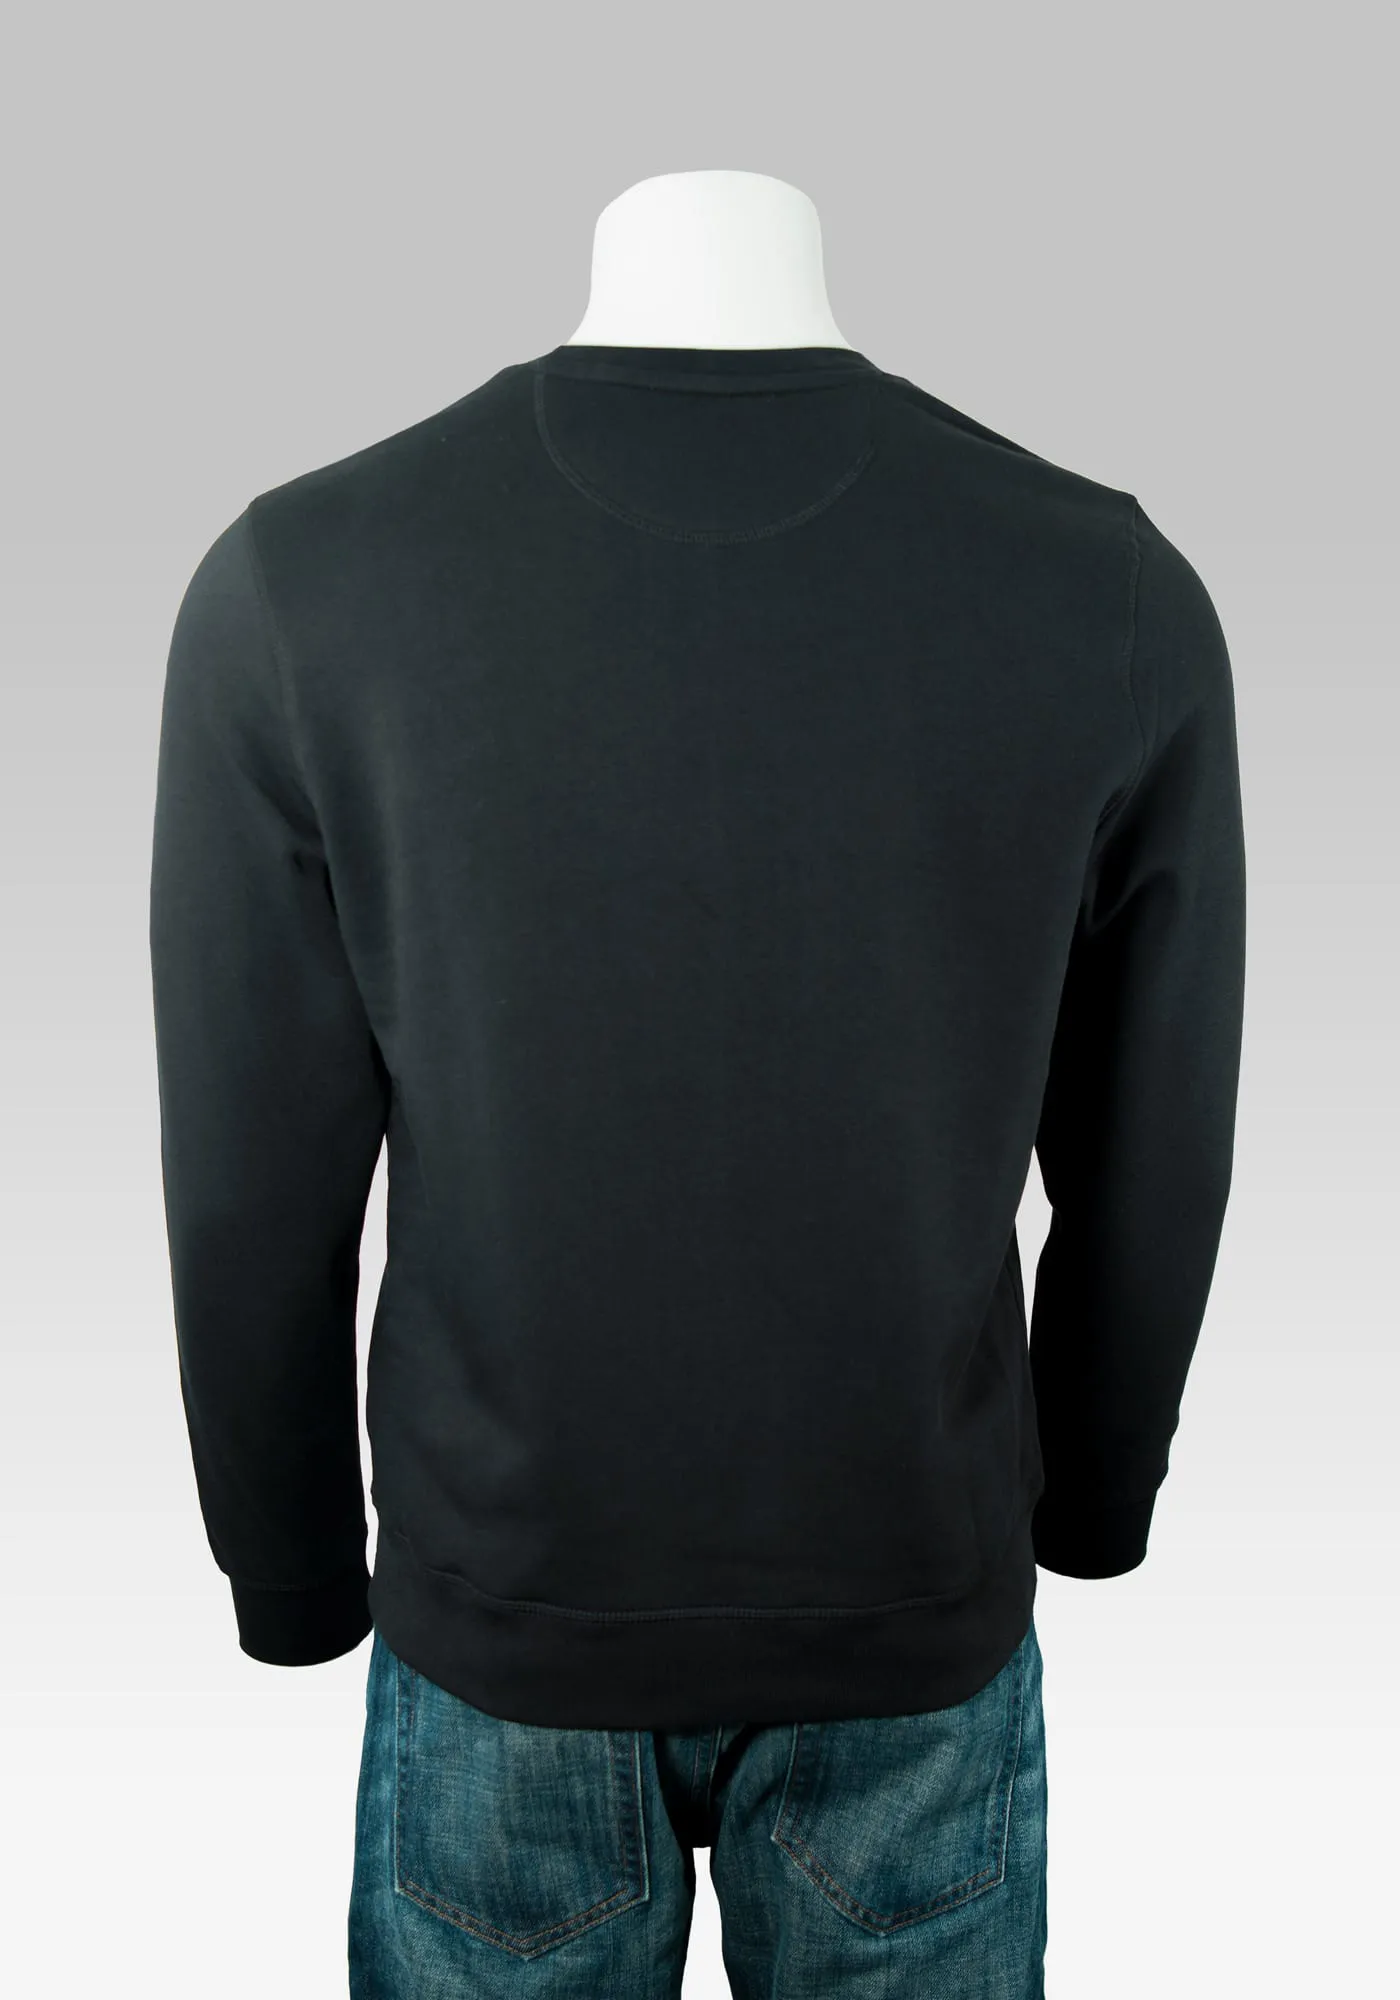 sweatshirt herren marken Hollowpuppe von hinten mit dem schwarzen Sweater ohne Rückenprint